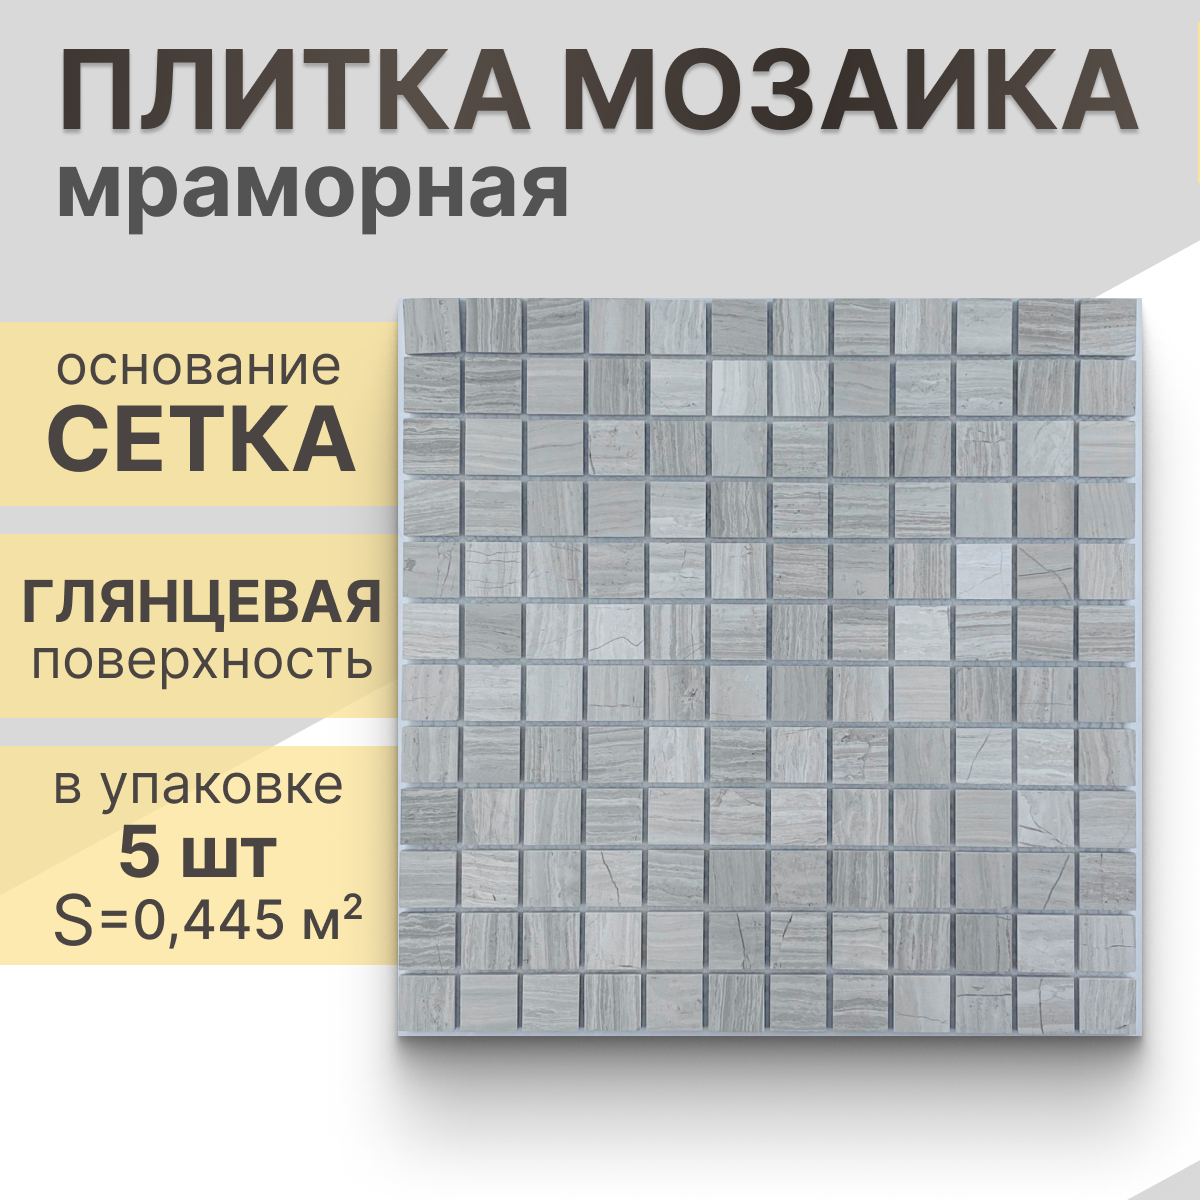 Мозаика (мрамор) NS mosaic Kp-751 29,8x29,8 см 5 шт (0,445 м²)